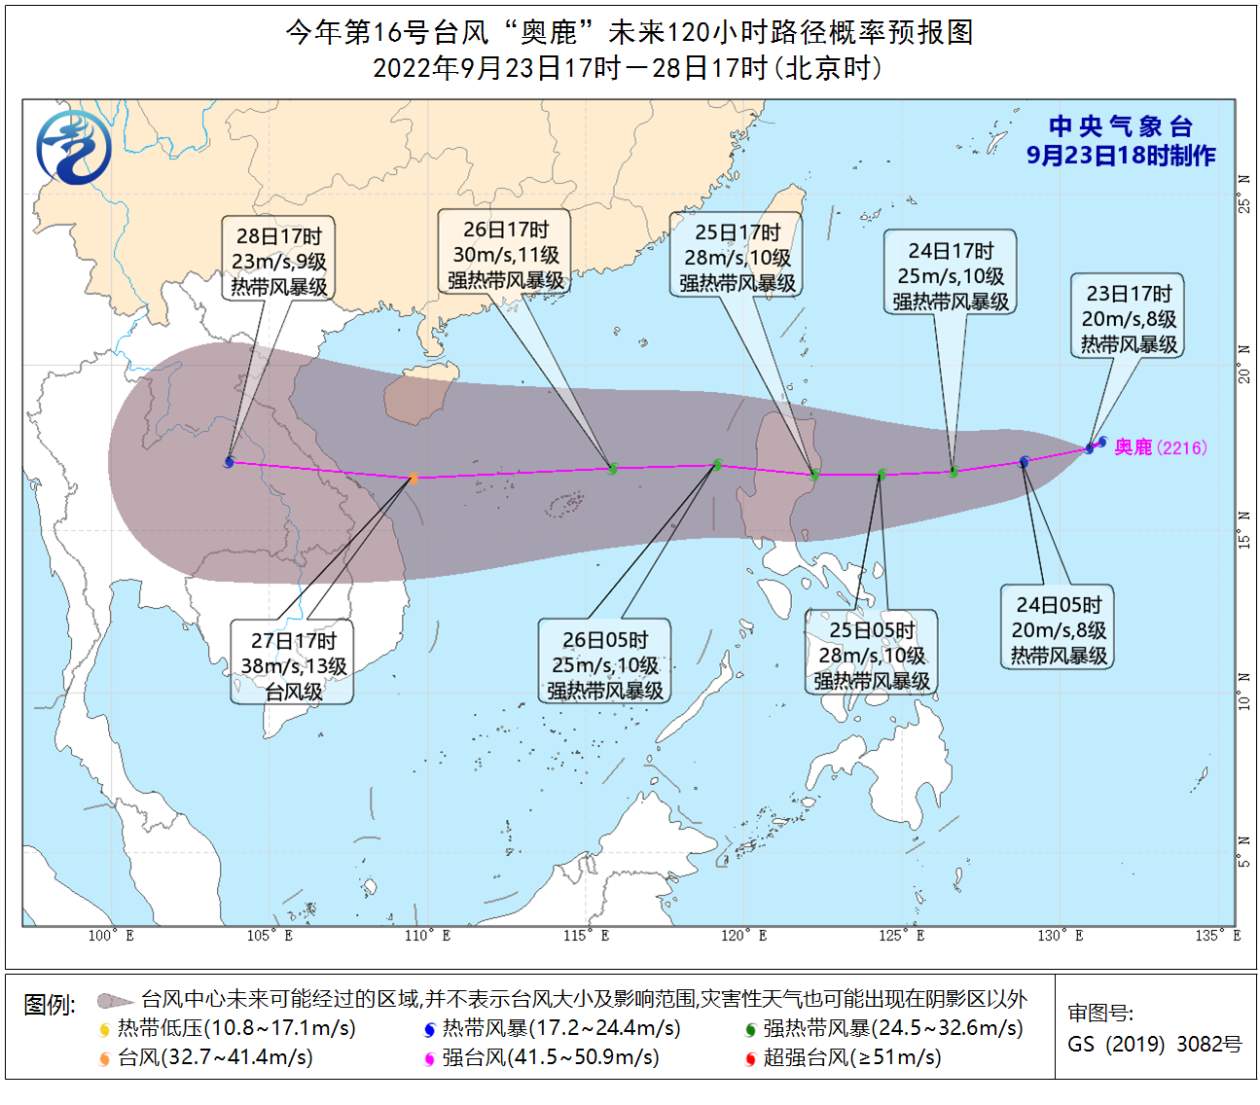 台风“塔拉斯”对我国无影响 台风“奥鹿”在西北太平洋生成